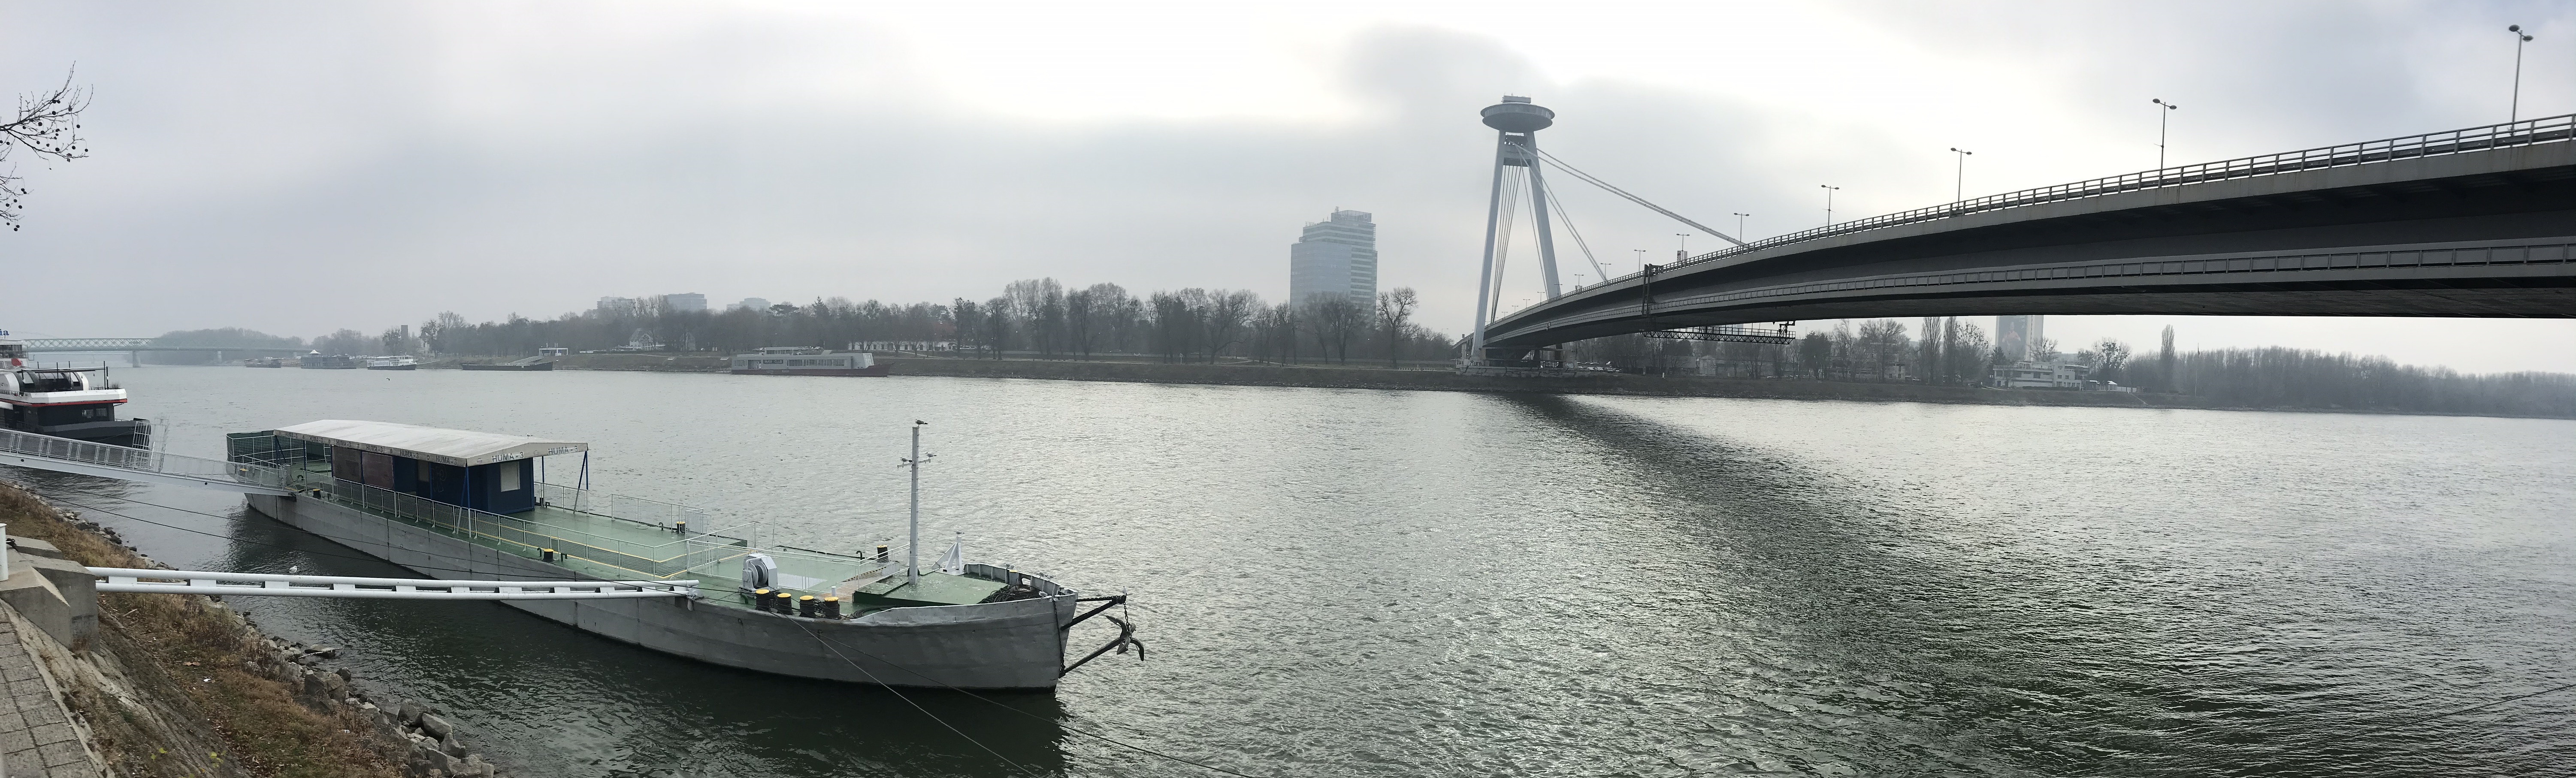 Puente Ovni sobre el río Danubio